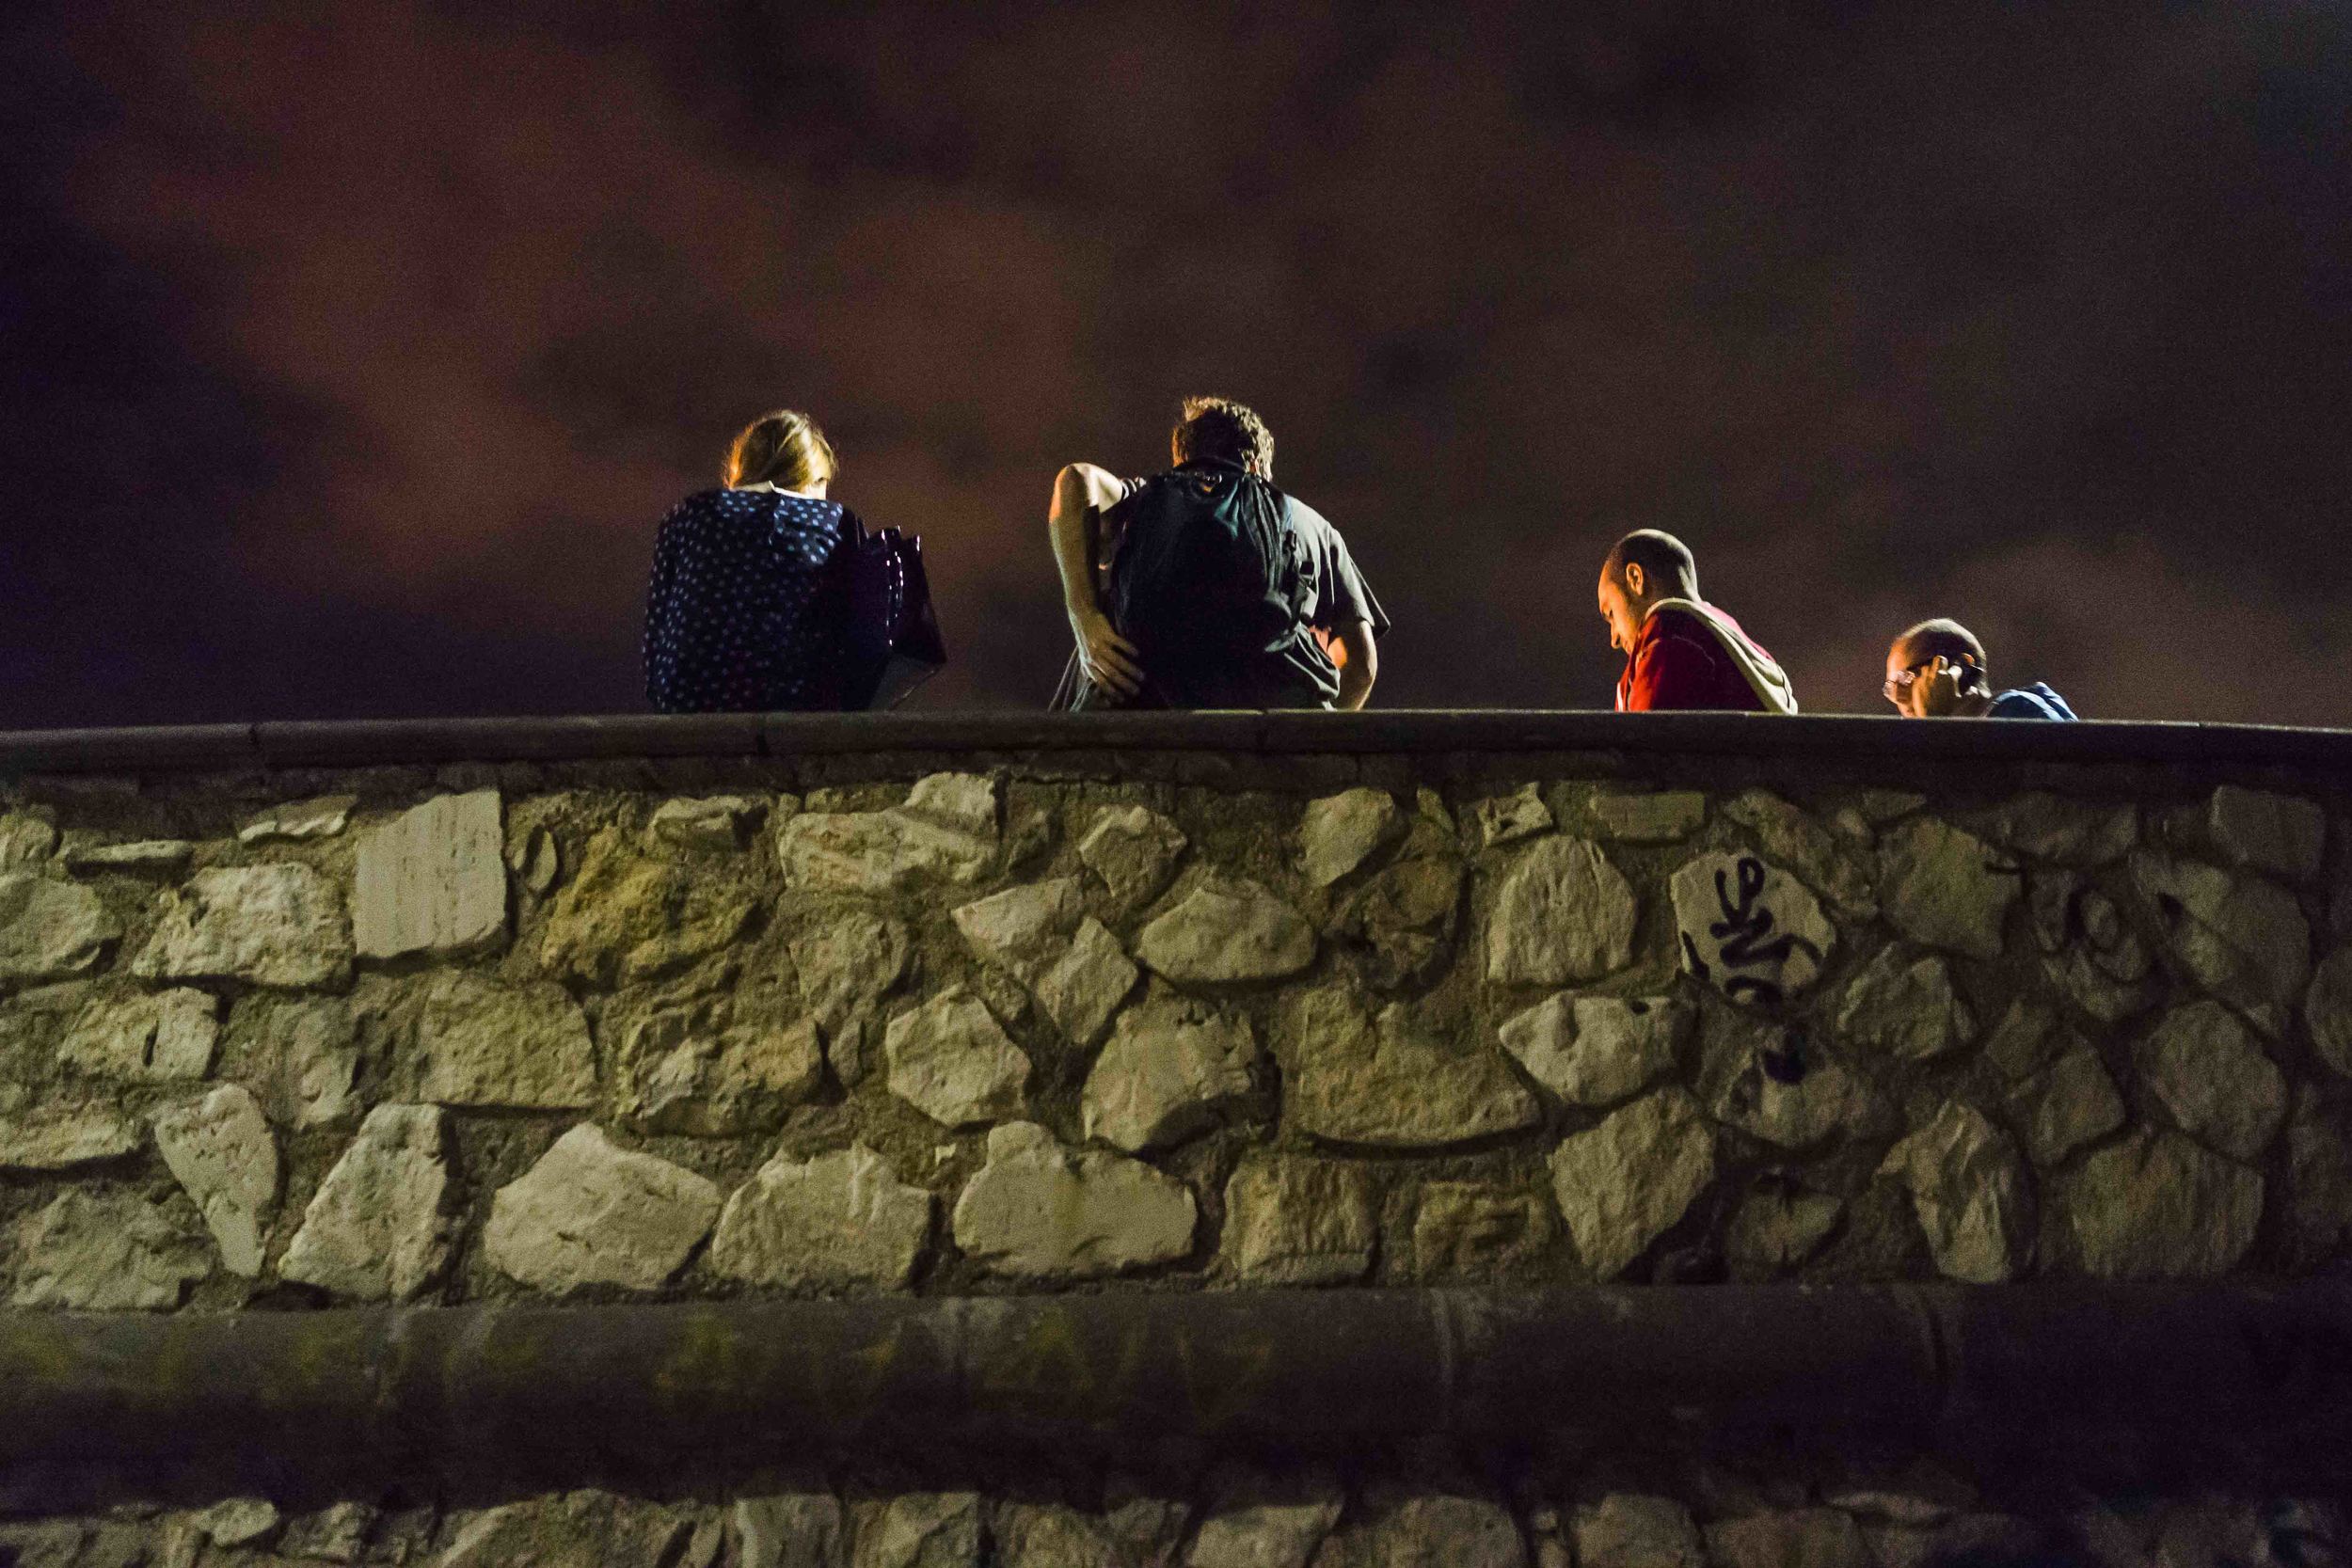  La terrazza sul mare del Pirgo sul lungomare della città è uno dei principali luoghi di ritrovo per i giovani di Civitavecchia. ottobre, 2014. (David Pagliani Istivan) 